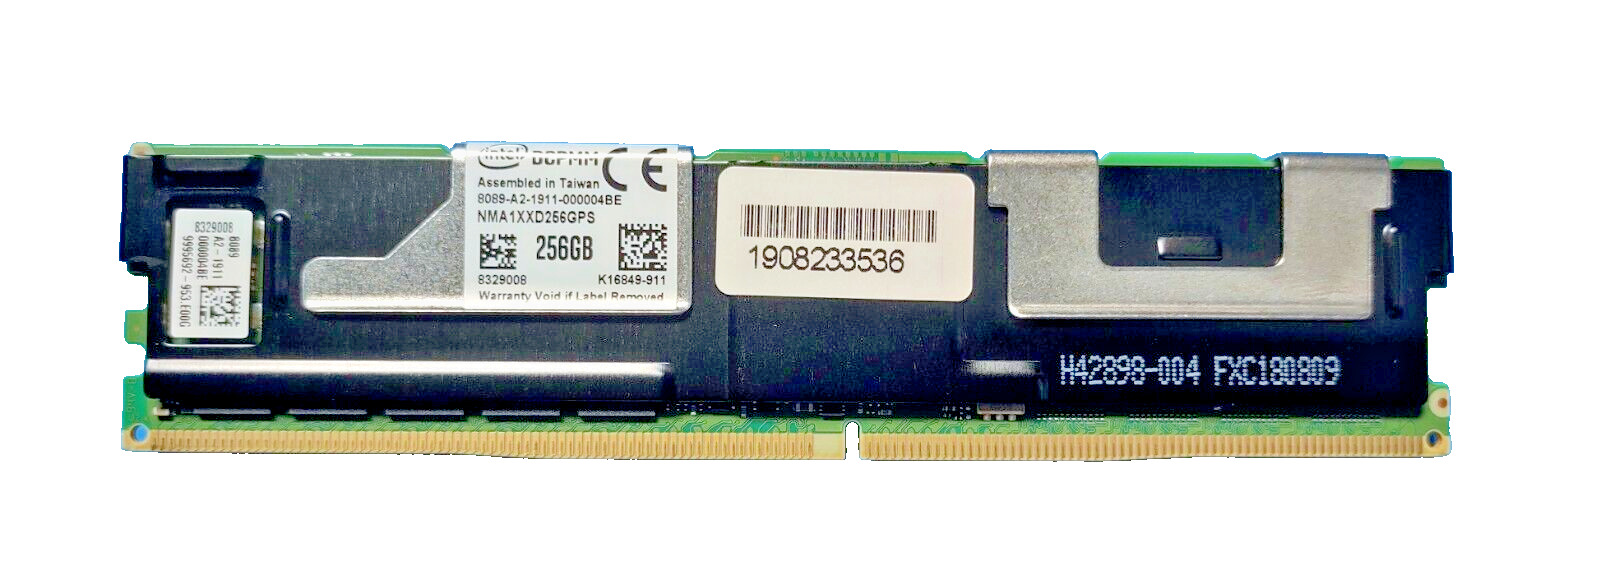 Intel Optane DC 256GB PC4-21300 DDR4-2666MHz Memory Module